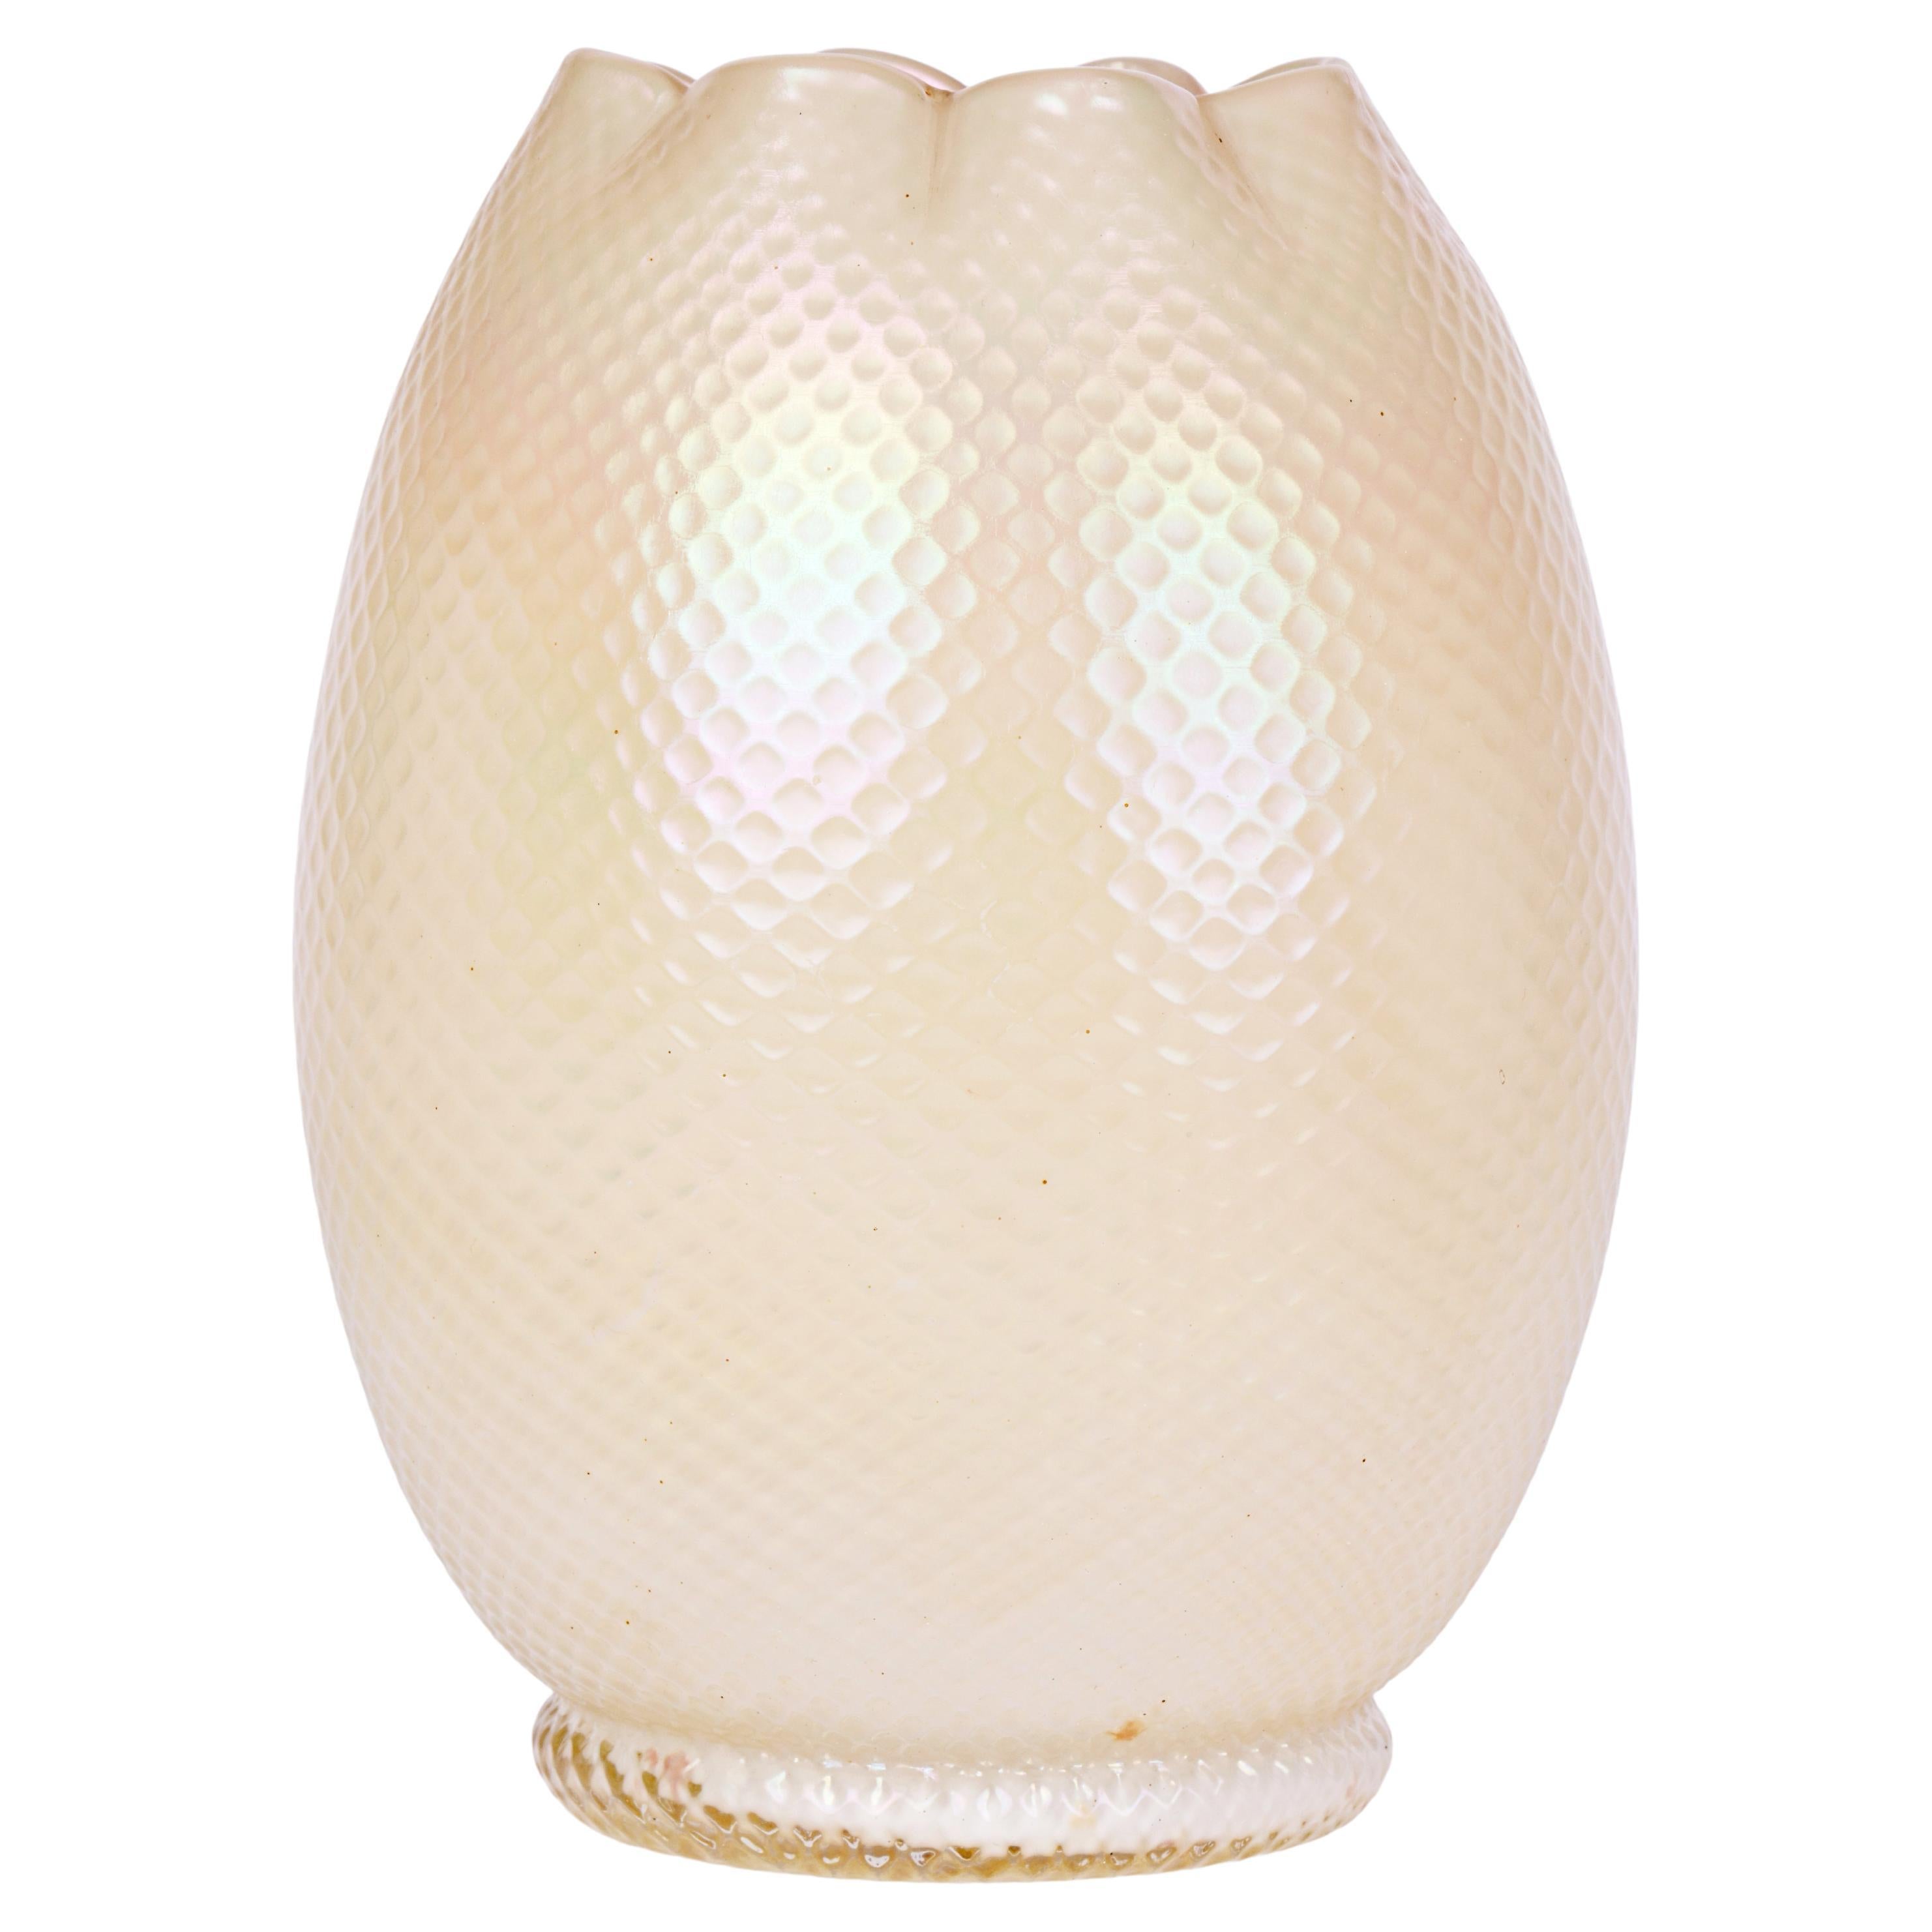 Kralik/Loetz White Opalescent Textured Art Glass Vase For Sale